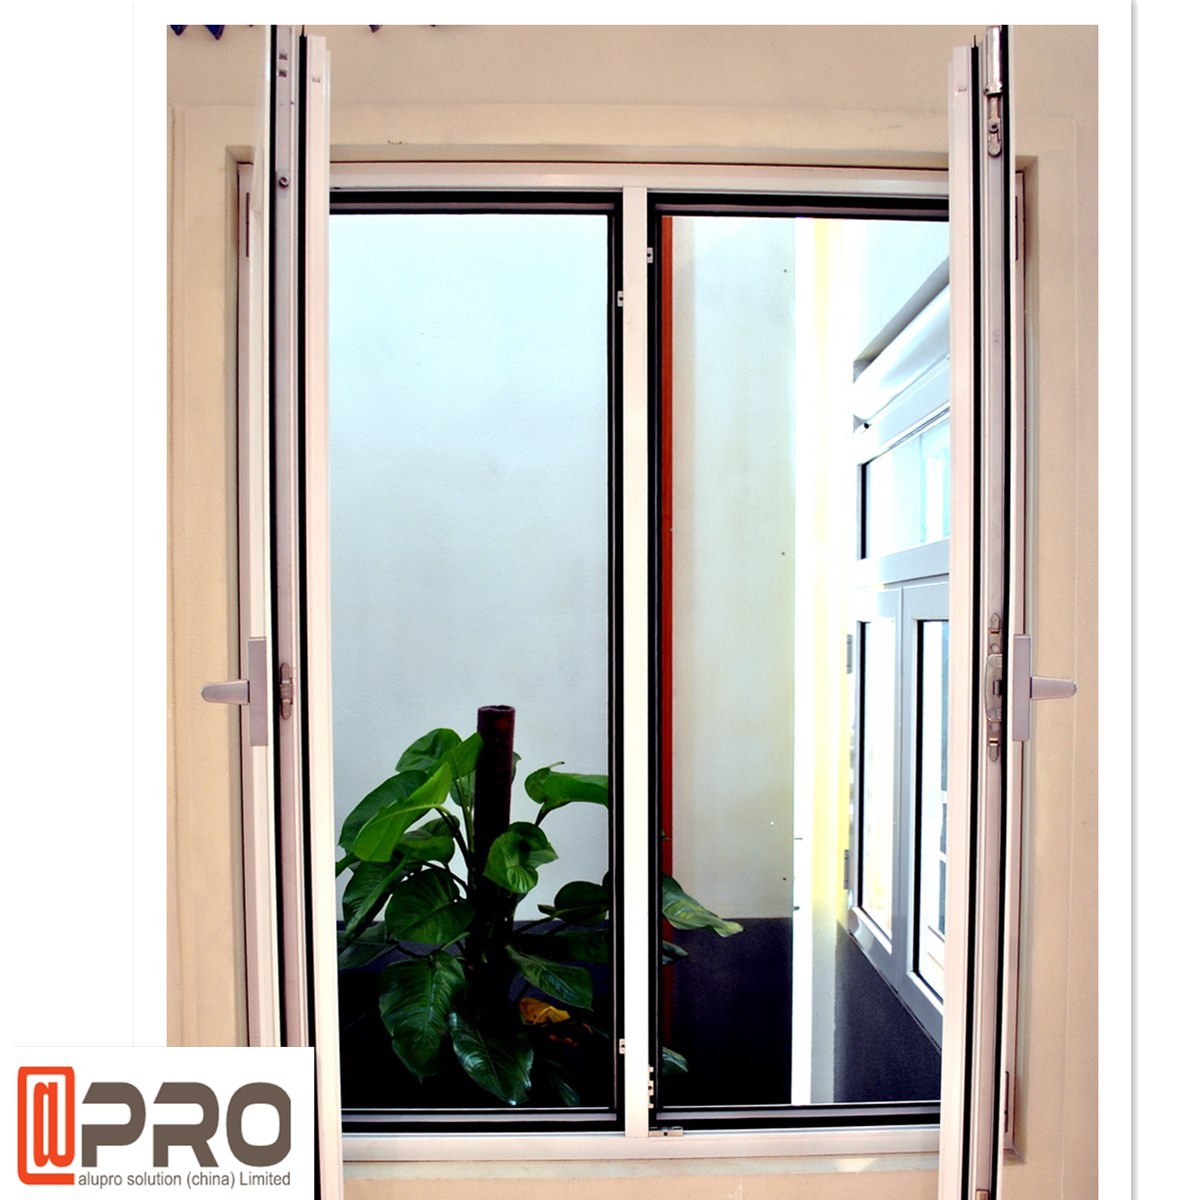 CASEMENT WINDOWS DOORS,windows casement handle,wood casement door